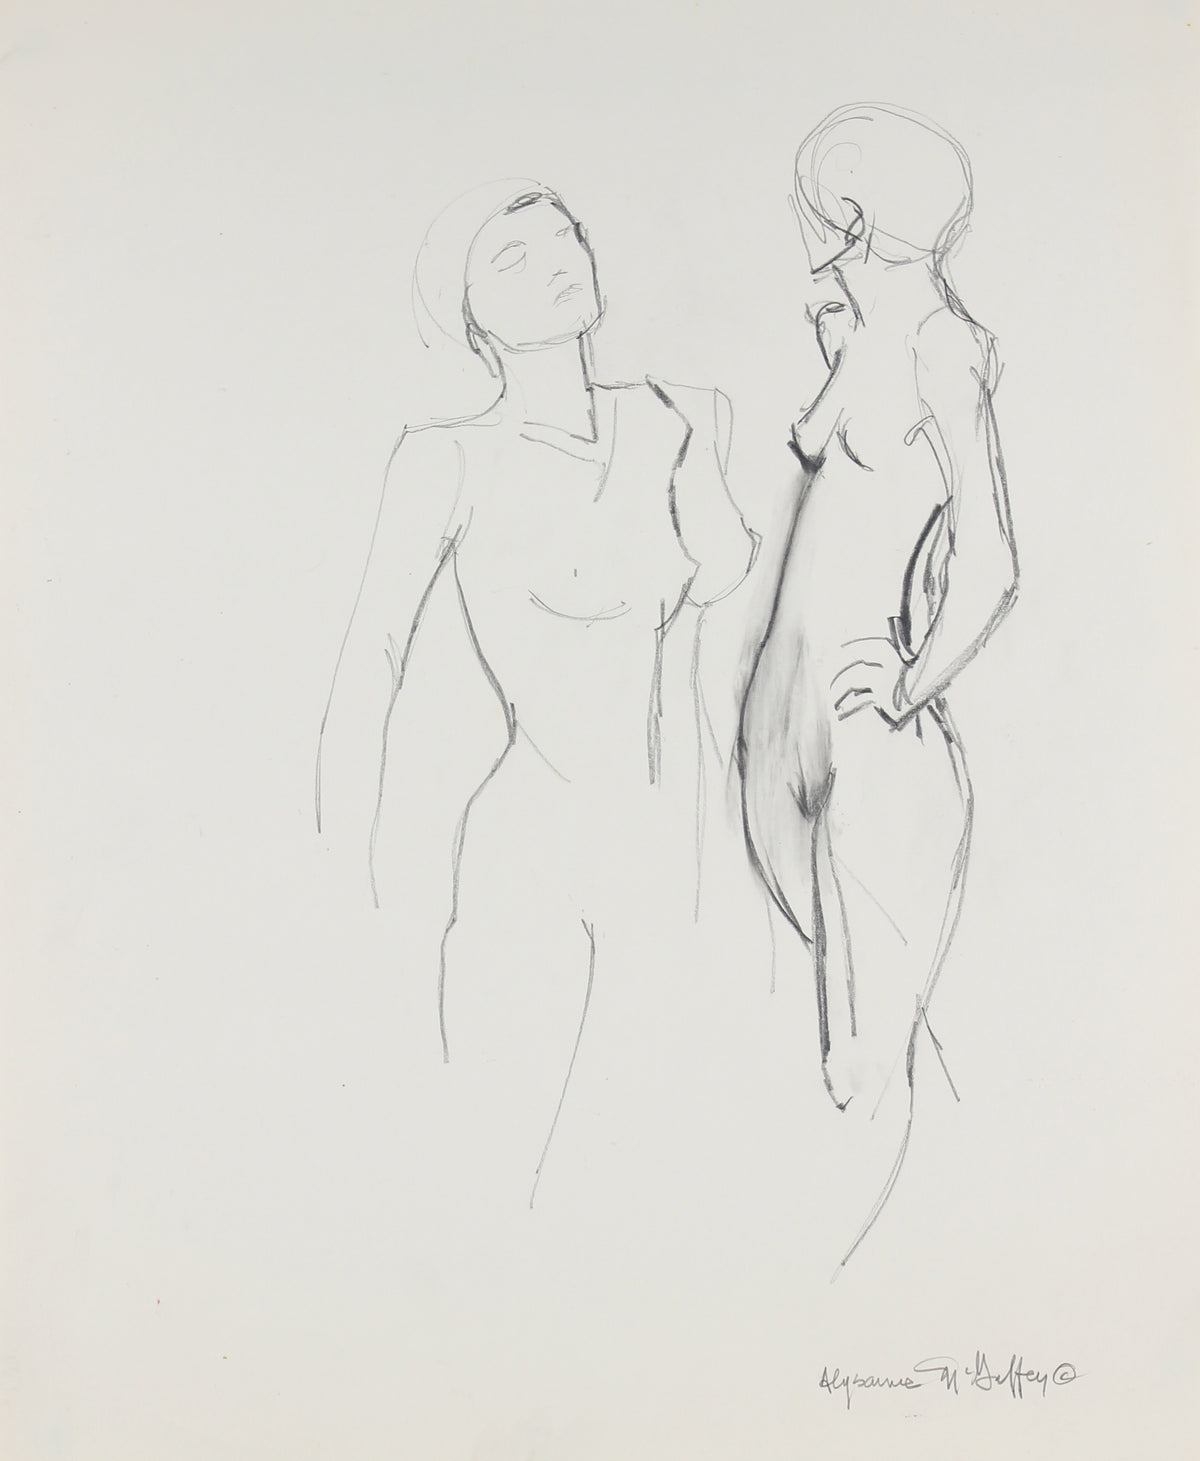 Pair of Female Figures &lt;br&gt;1950-60s Charcoal &lt;br&gt;&lt;br&gt;#23413